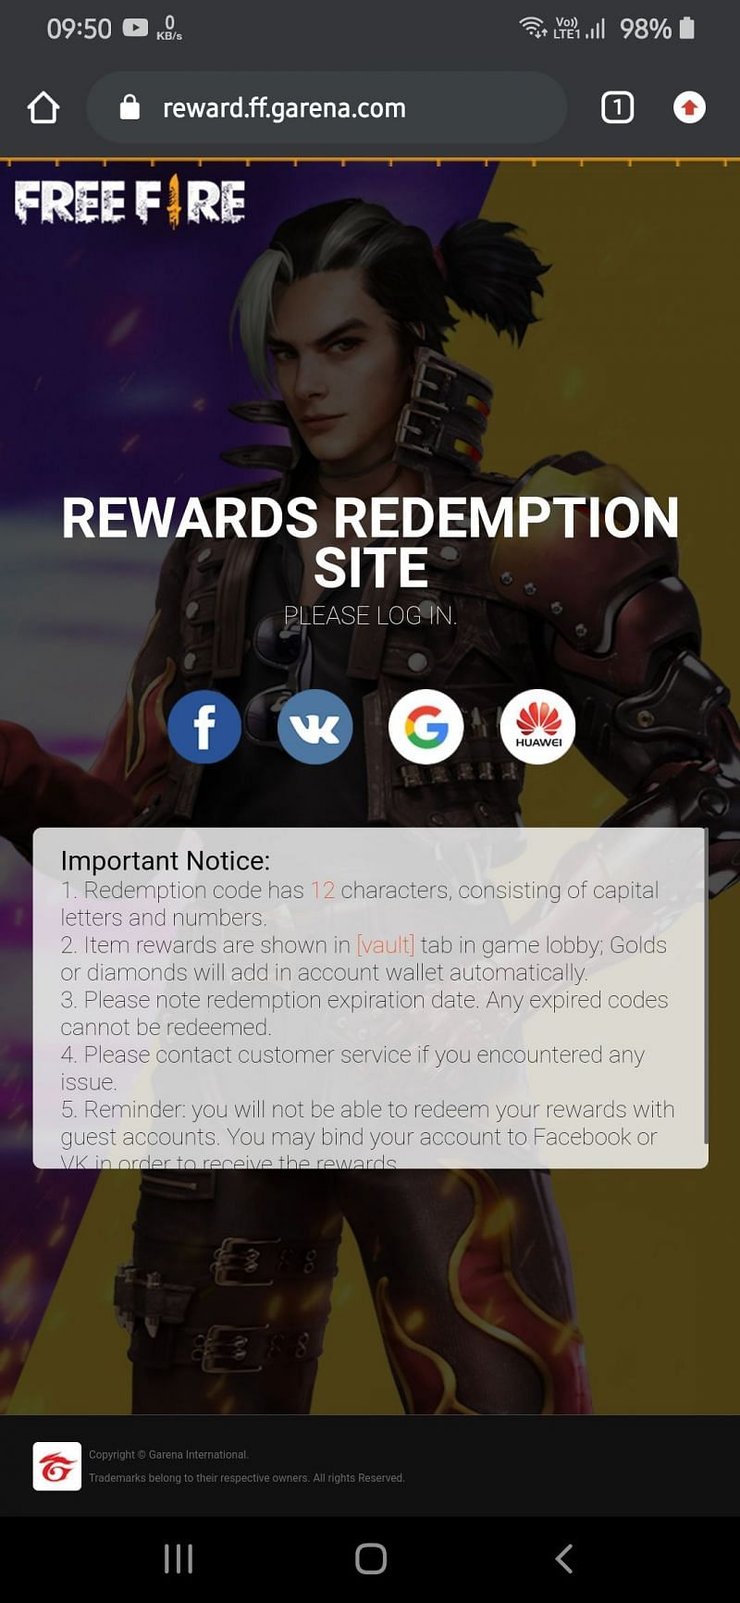 Free Fire rewards redemption site